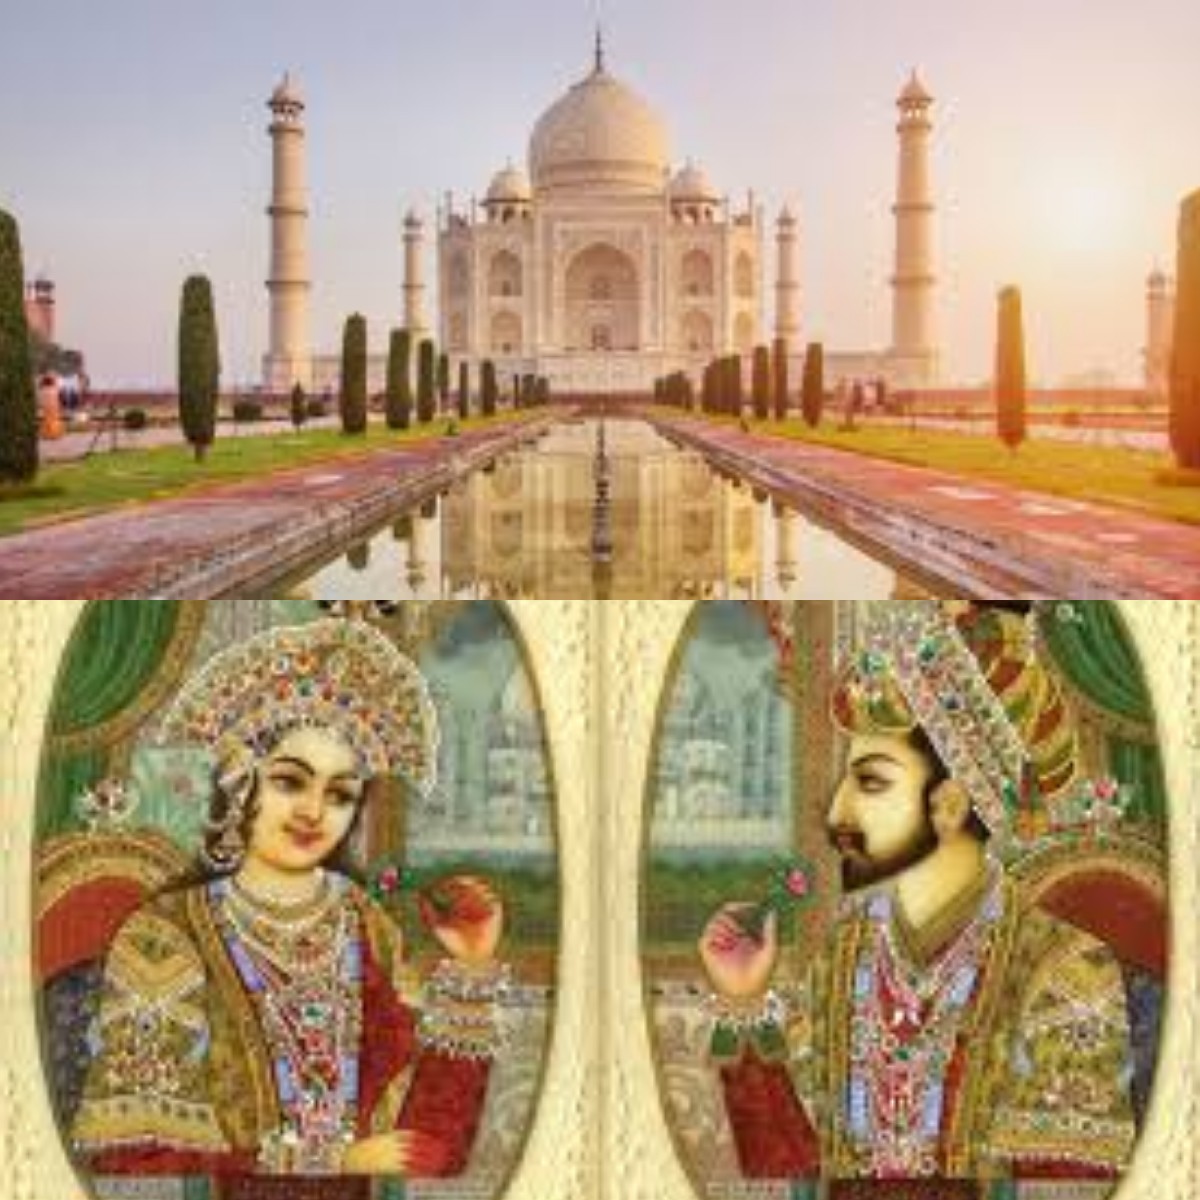 Diakui oleh UNESCO! Inilah Keistimewaan Taj Mahal yang Menyimpan Rahasia Sejarah 